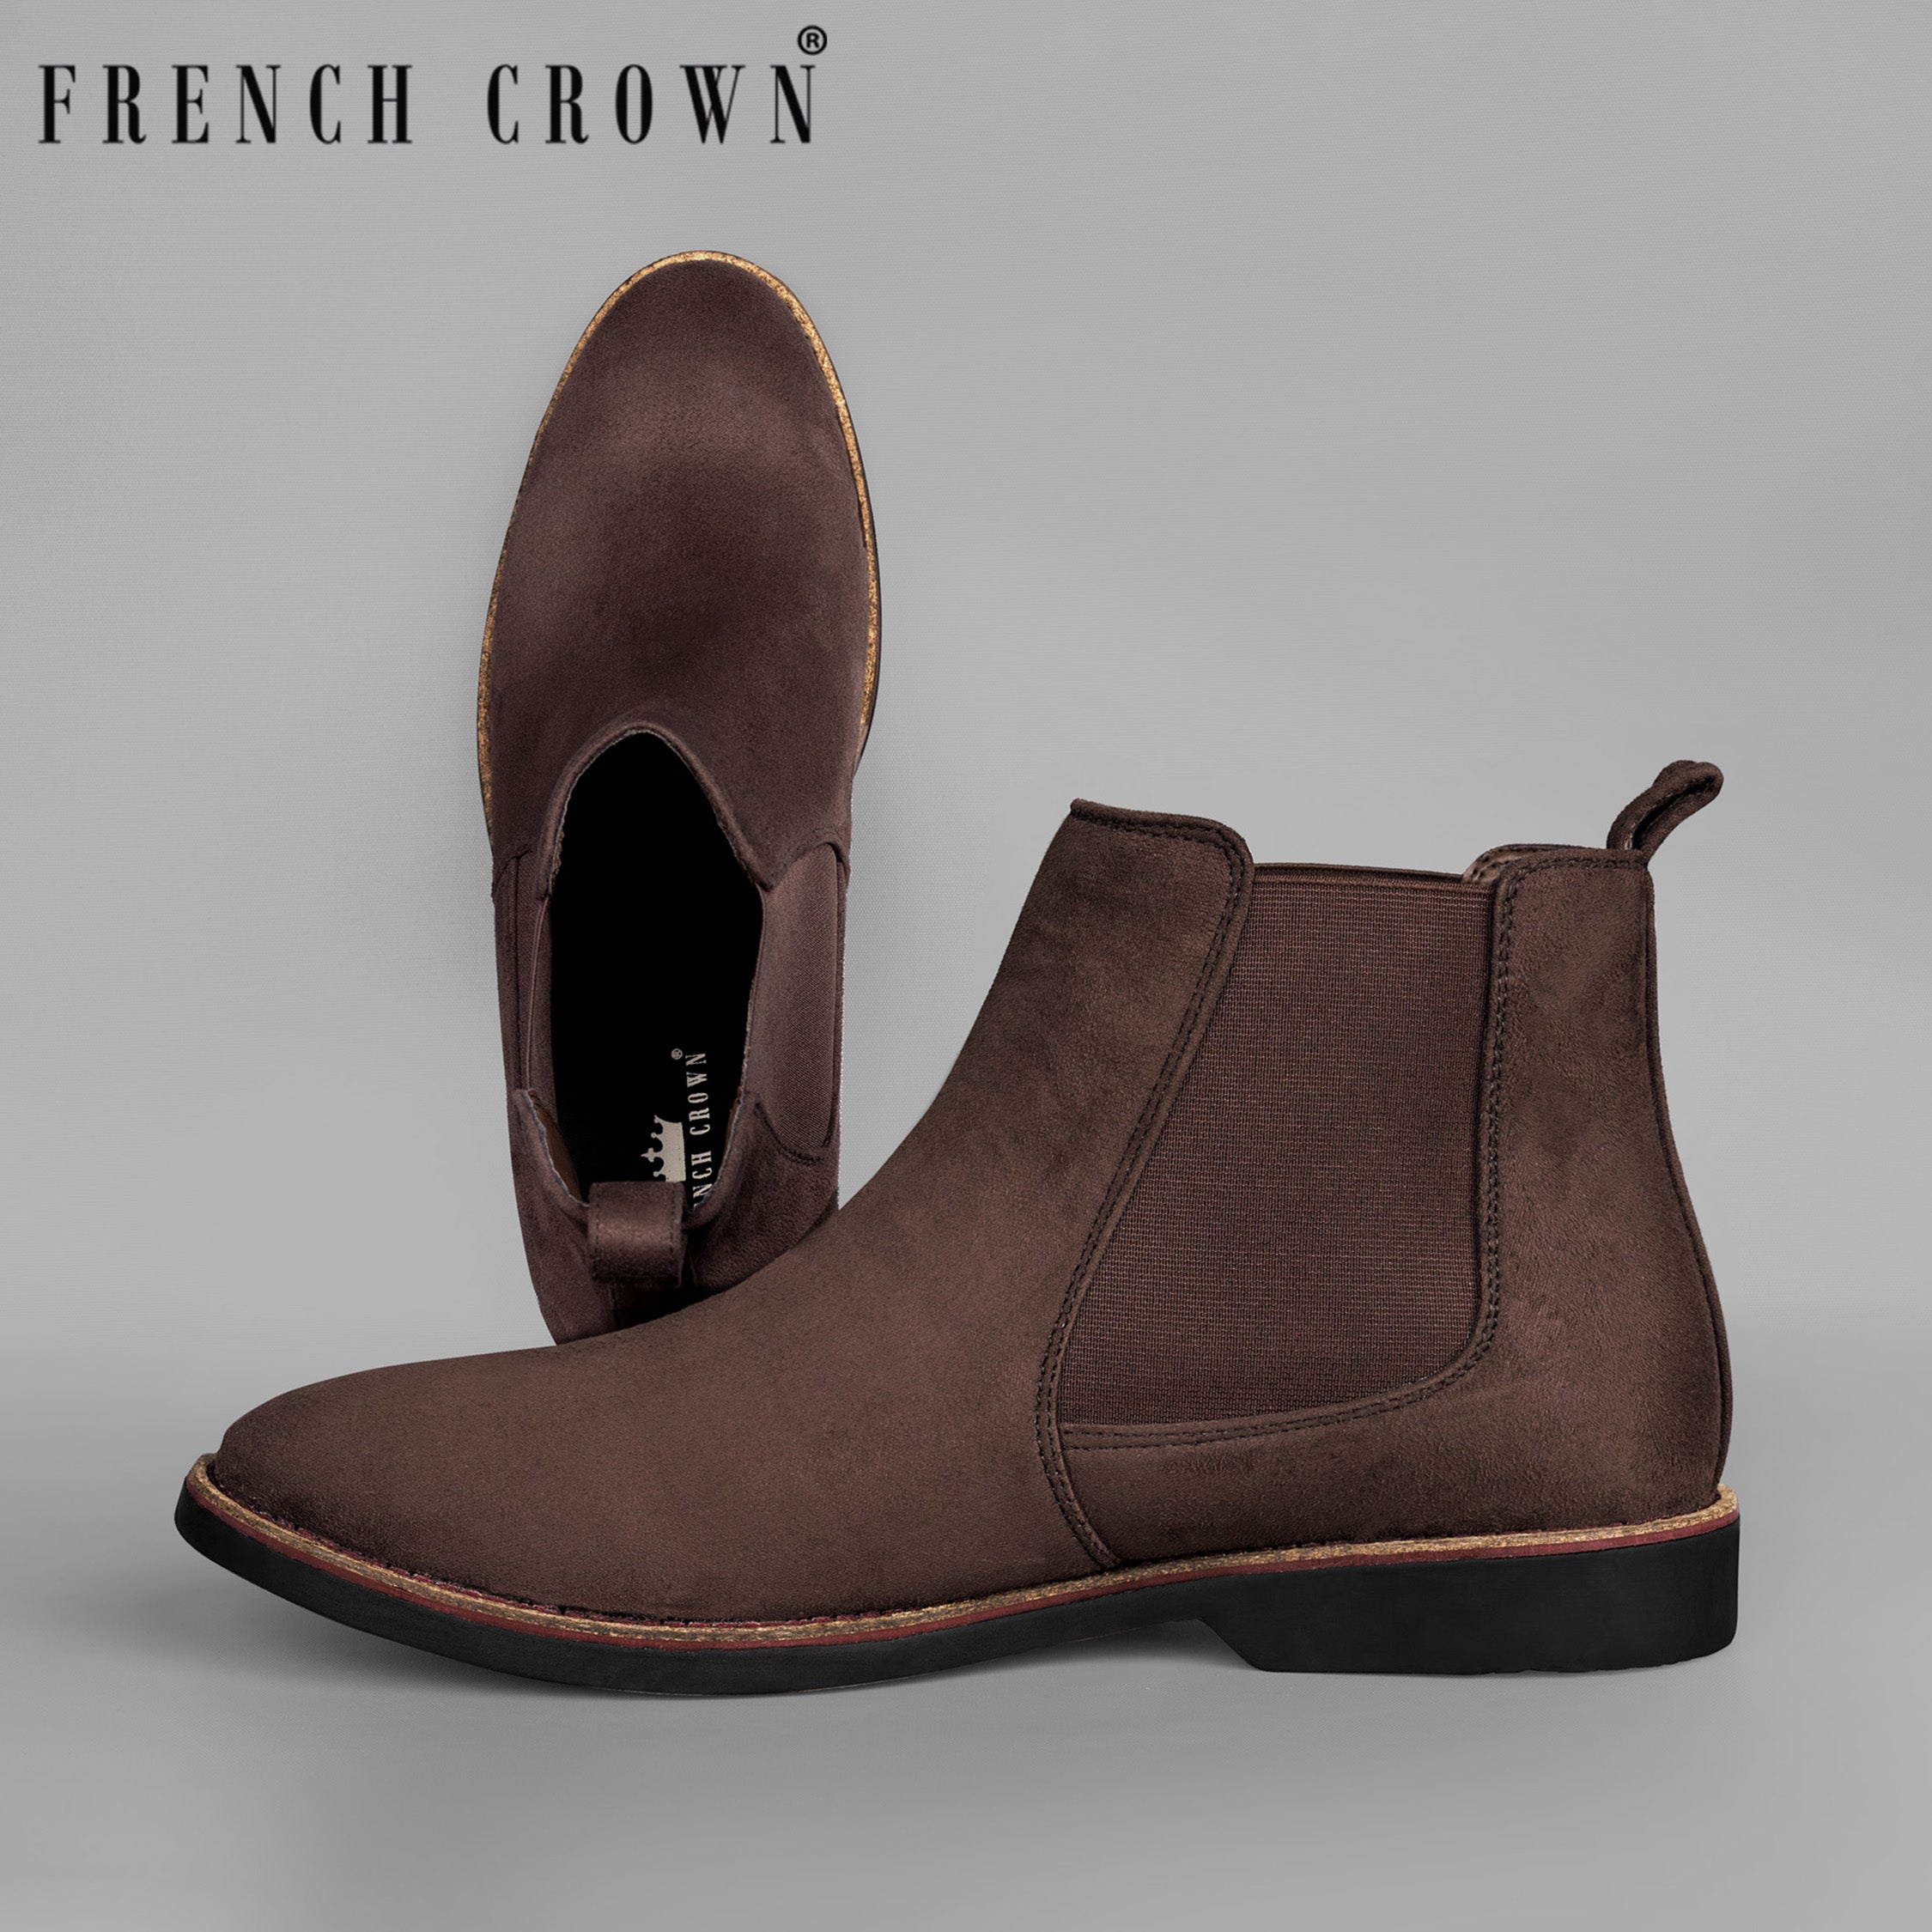 udvande Primitiv Fremragende Deep Taupe Brown Solid Premium Vegan Leather Chelsea Boots for Men